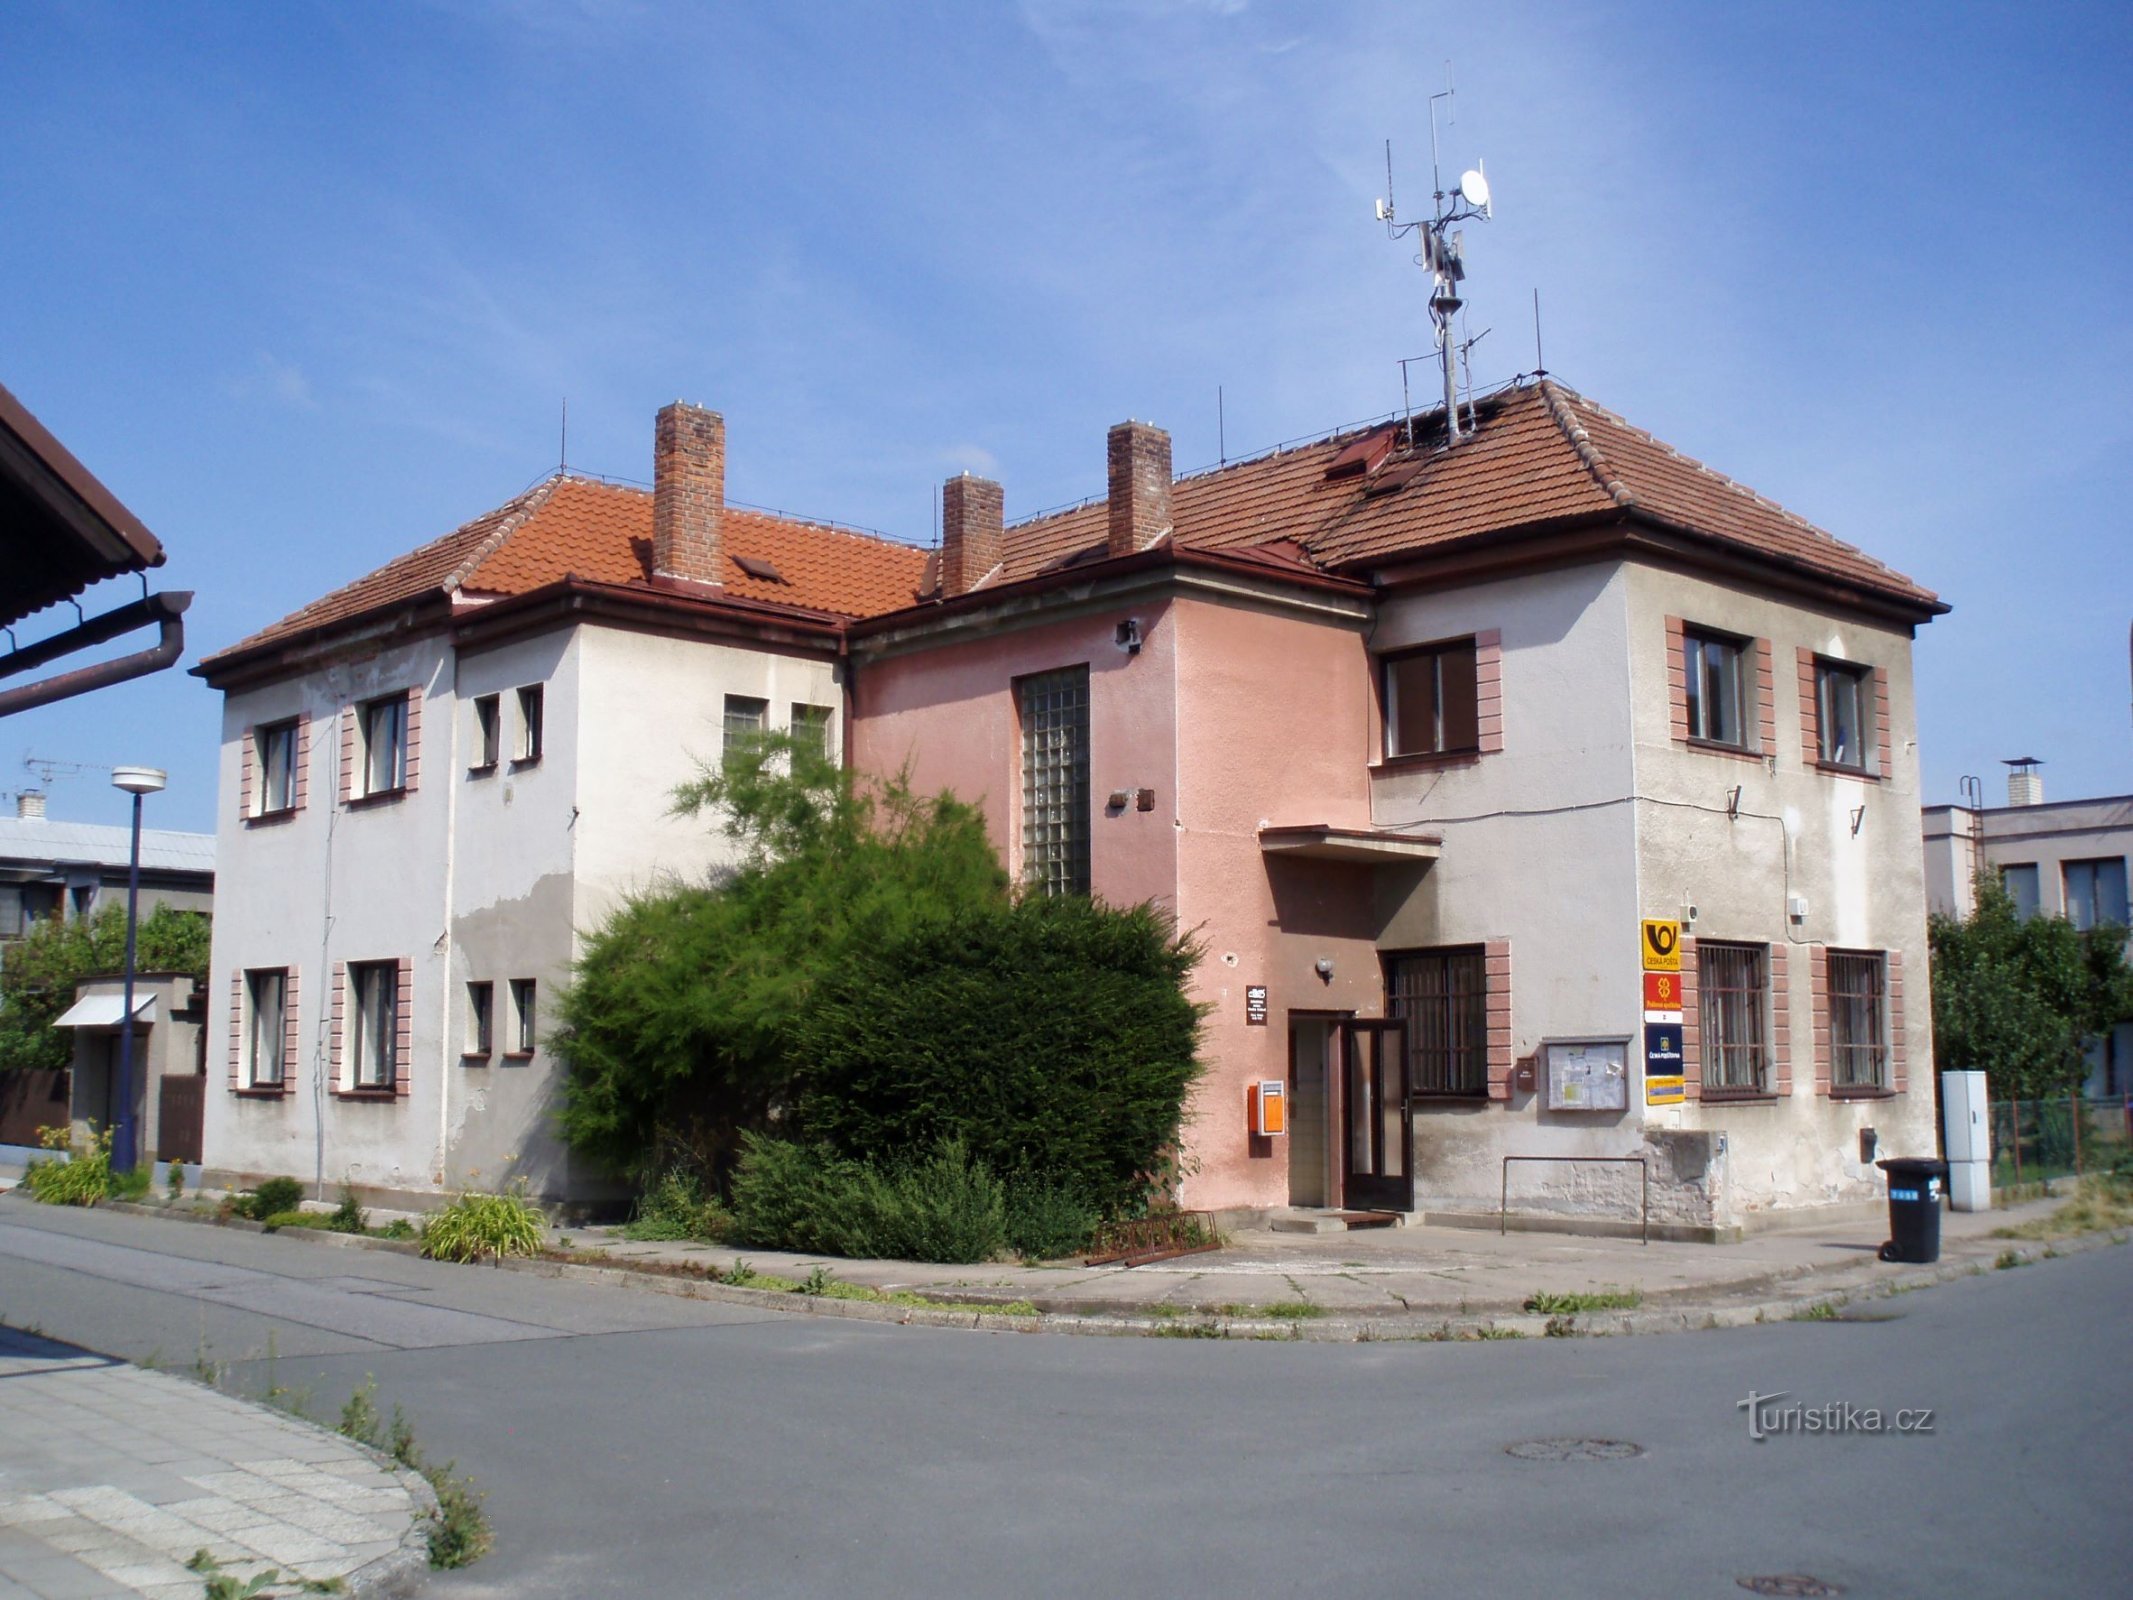 Casa della Cultura a Březhrad (Hradec Králové, 27.7.2010/XNUMX/XNUMX)